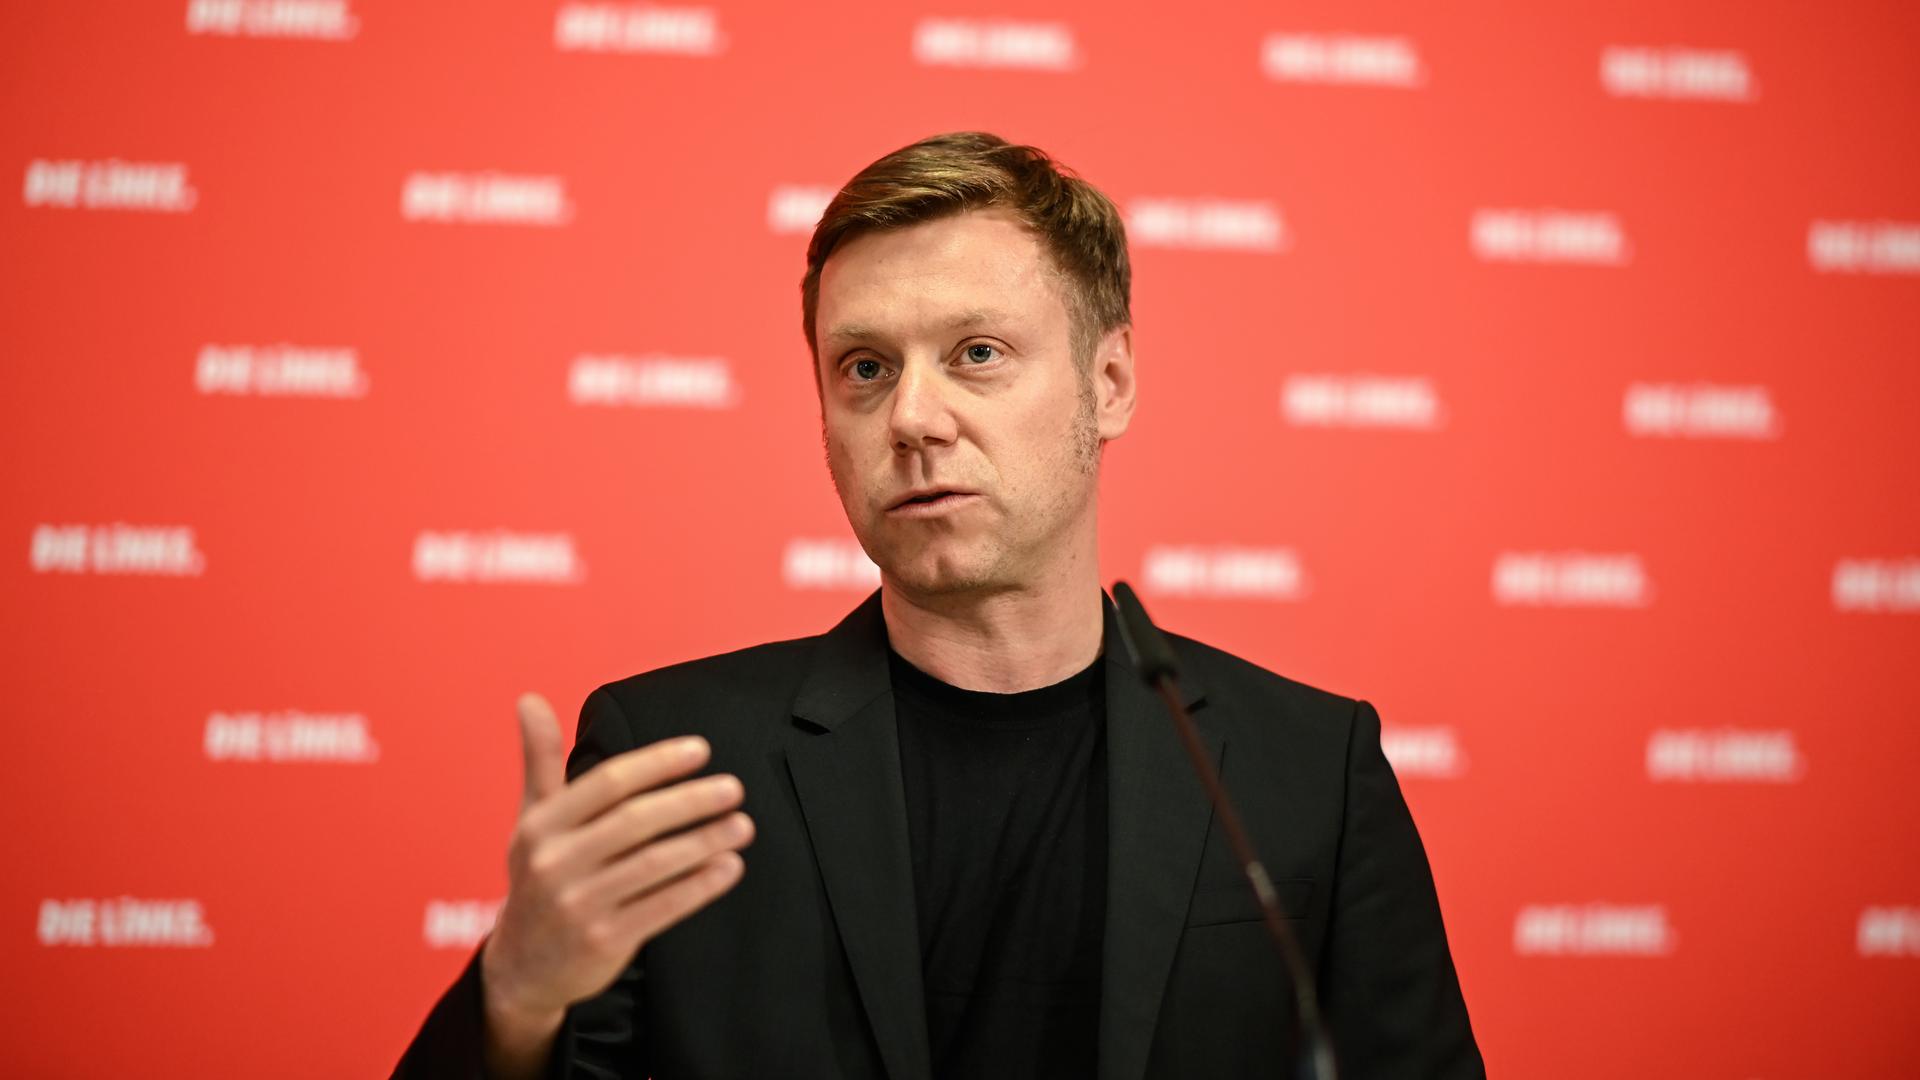 Martin Schirdewan, Vorsitzender der Partei Die Linke, spricht bei einer Pressekonferenz.